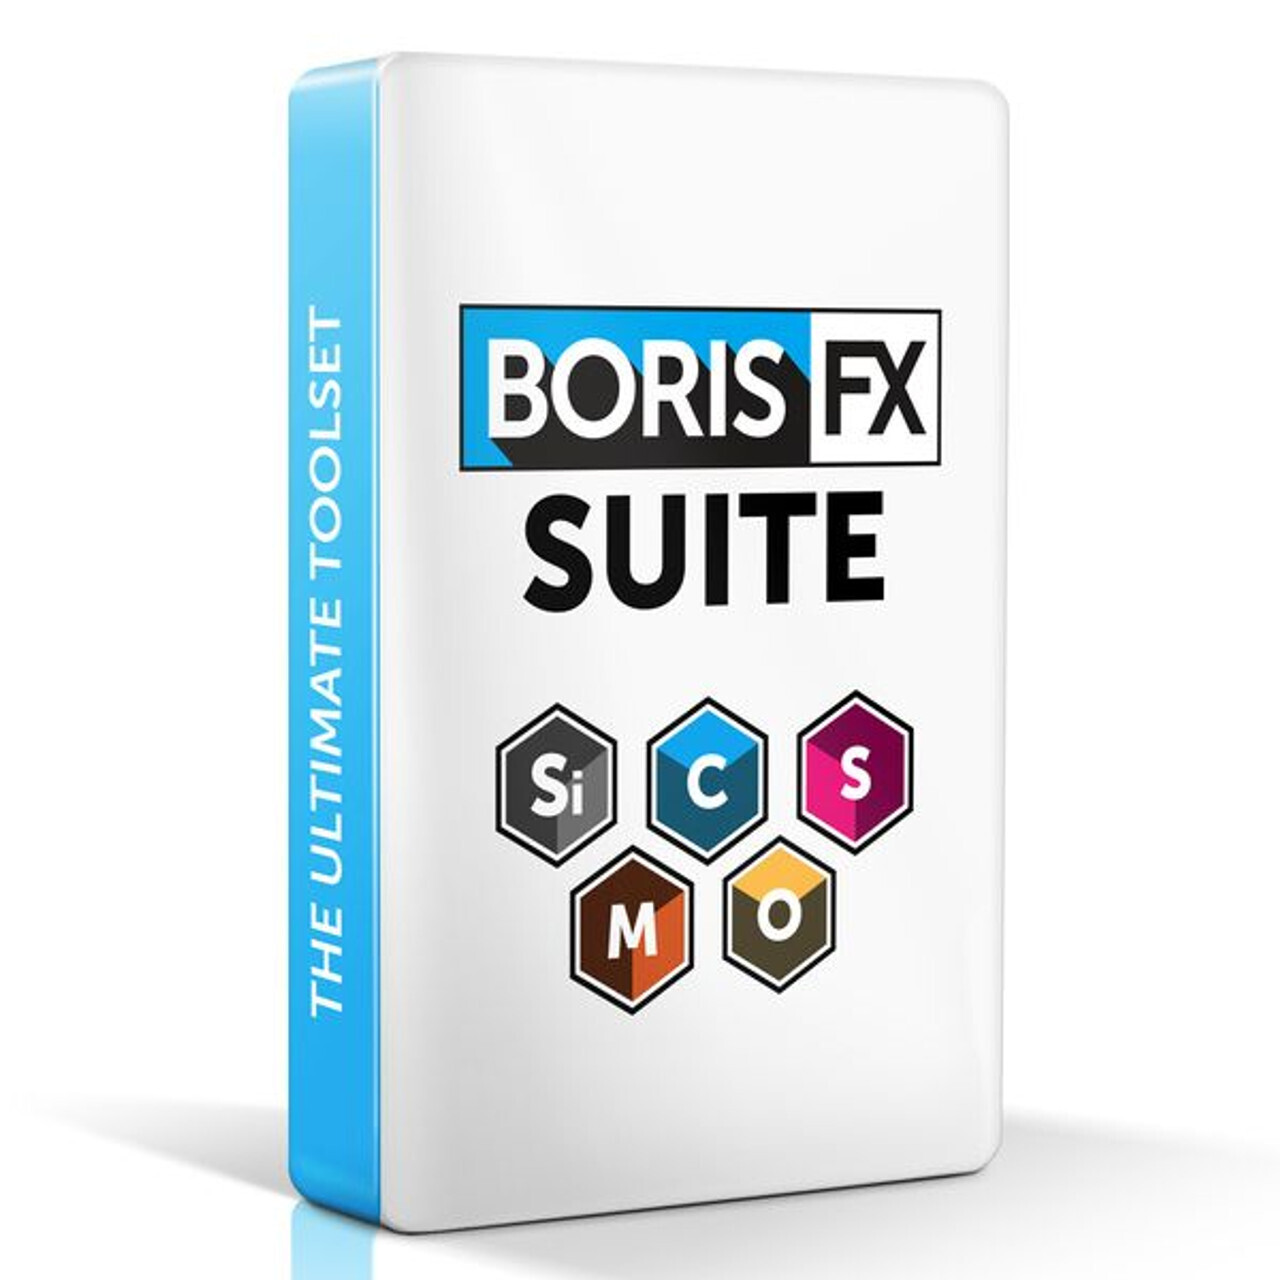 Boris FX Suite for Windows